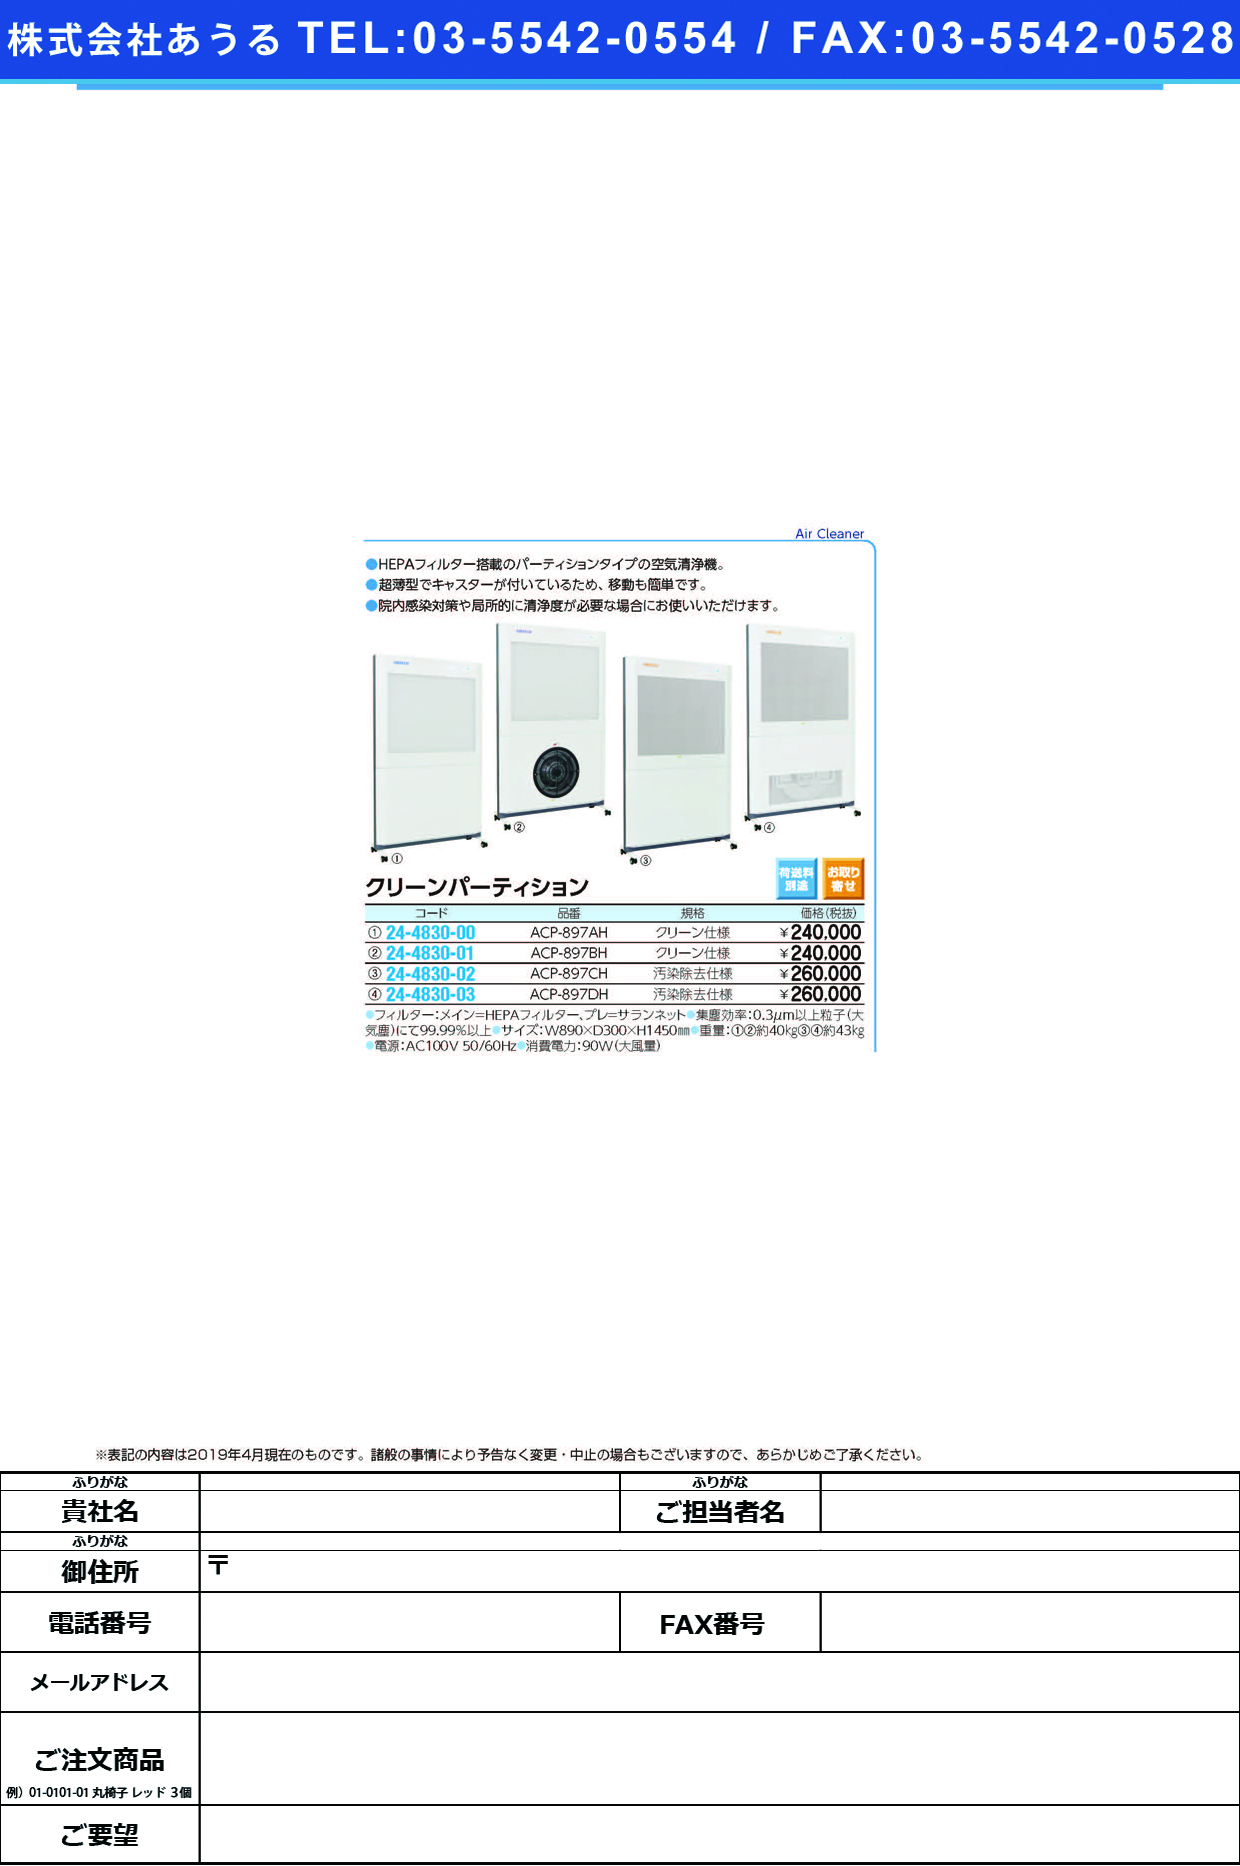 (24-4830-00)クリーンパーティションＡ型 ACP-897AH ｸﾘｰﾝﾊﾟ-ﾃｨｼｮﾝA【1台単位】【2019年カタログ商品】